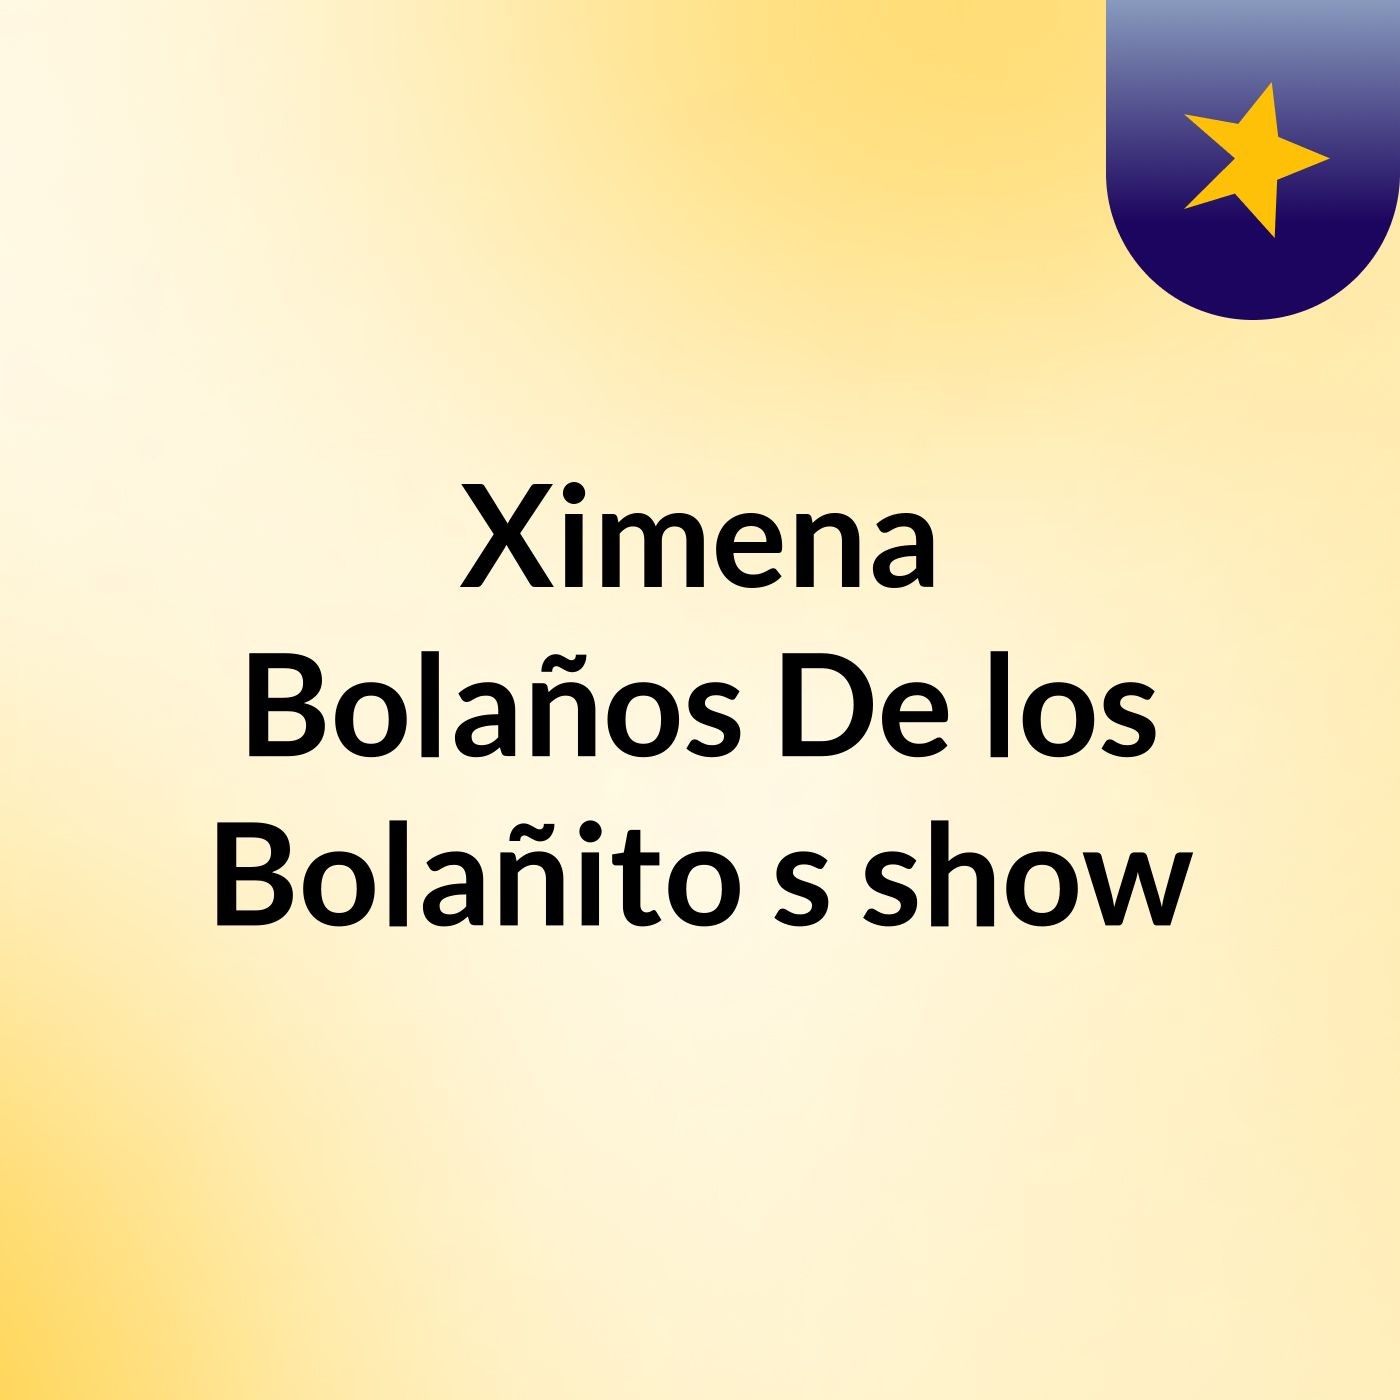 Ximena Bolaños De los Bolañito's show